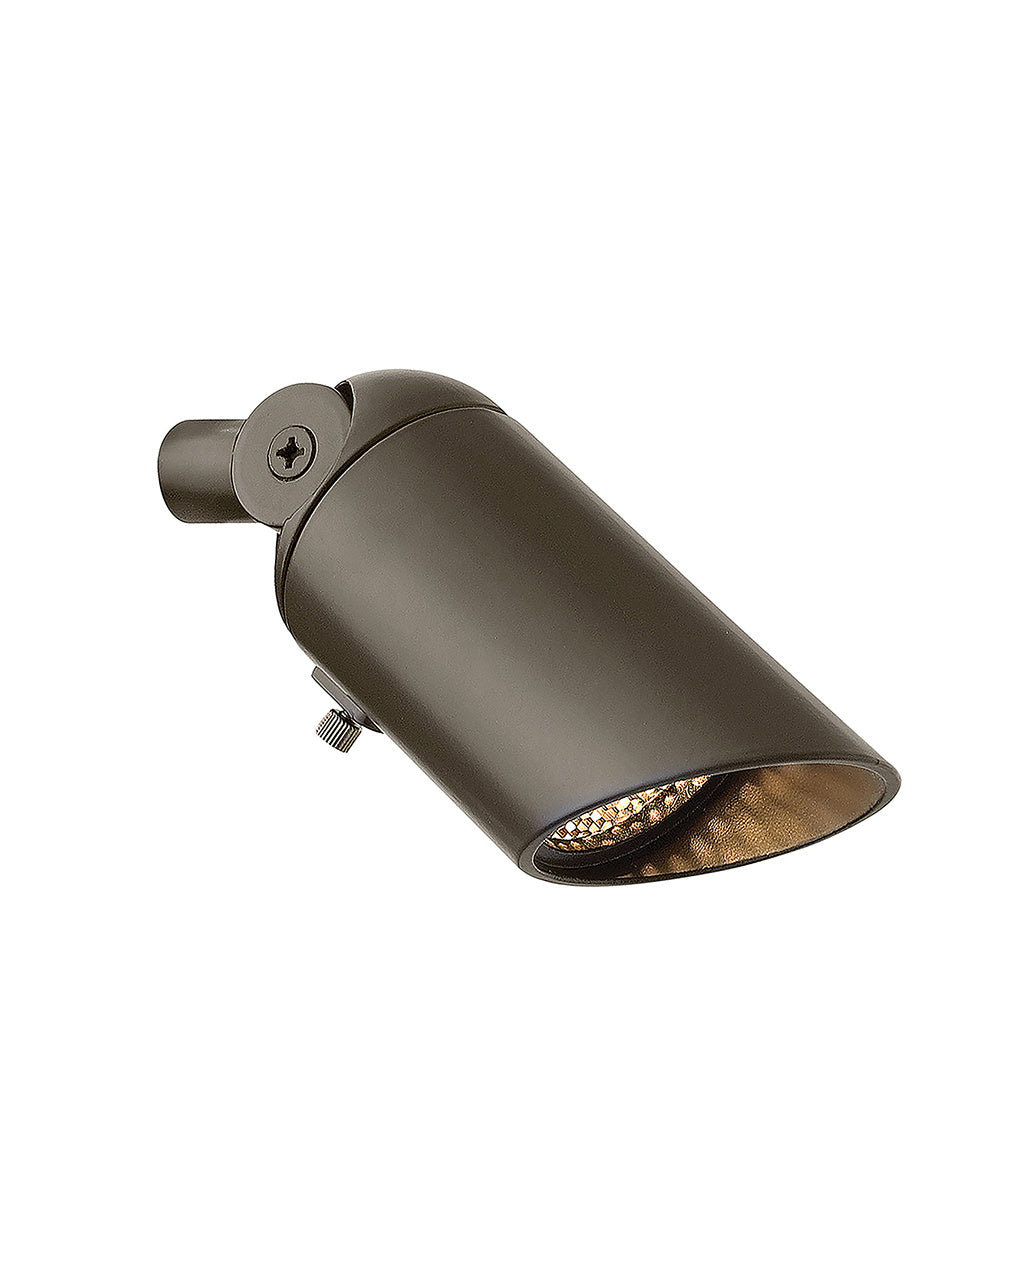 Hinkley - 1536BZDN - LED Down Light - Accent Spot Light - Bronze